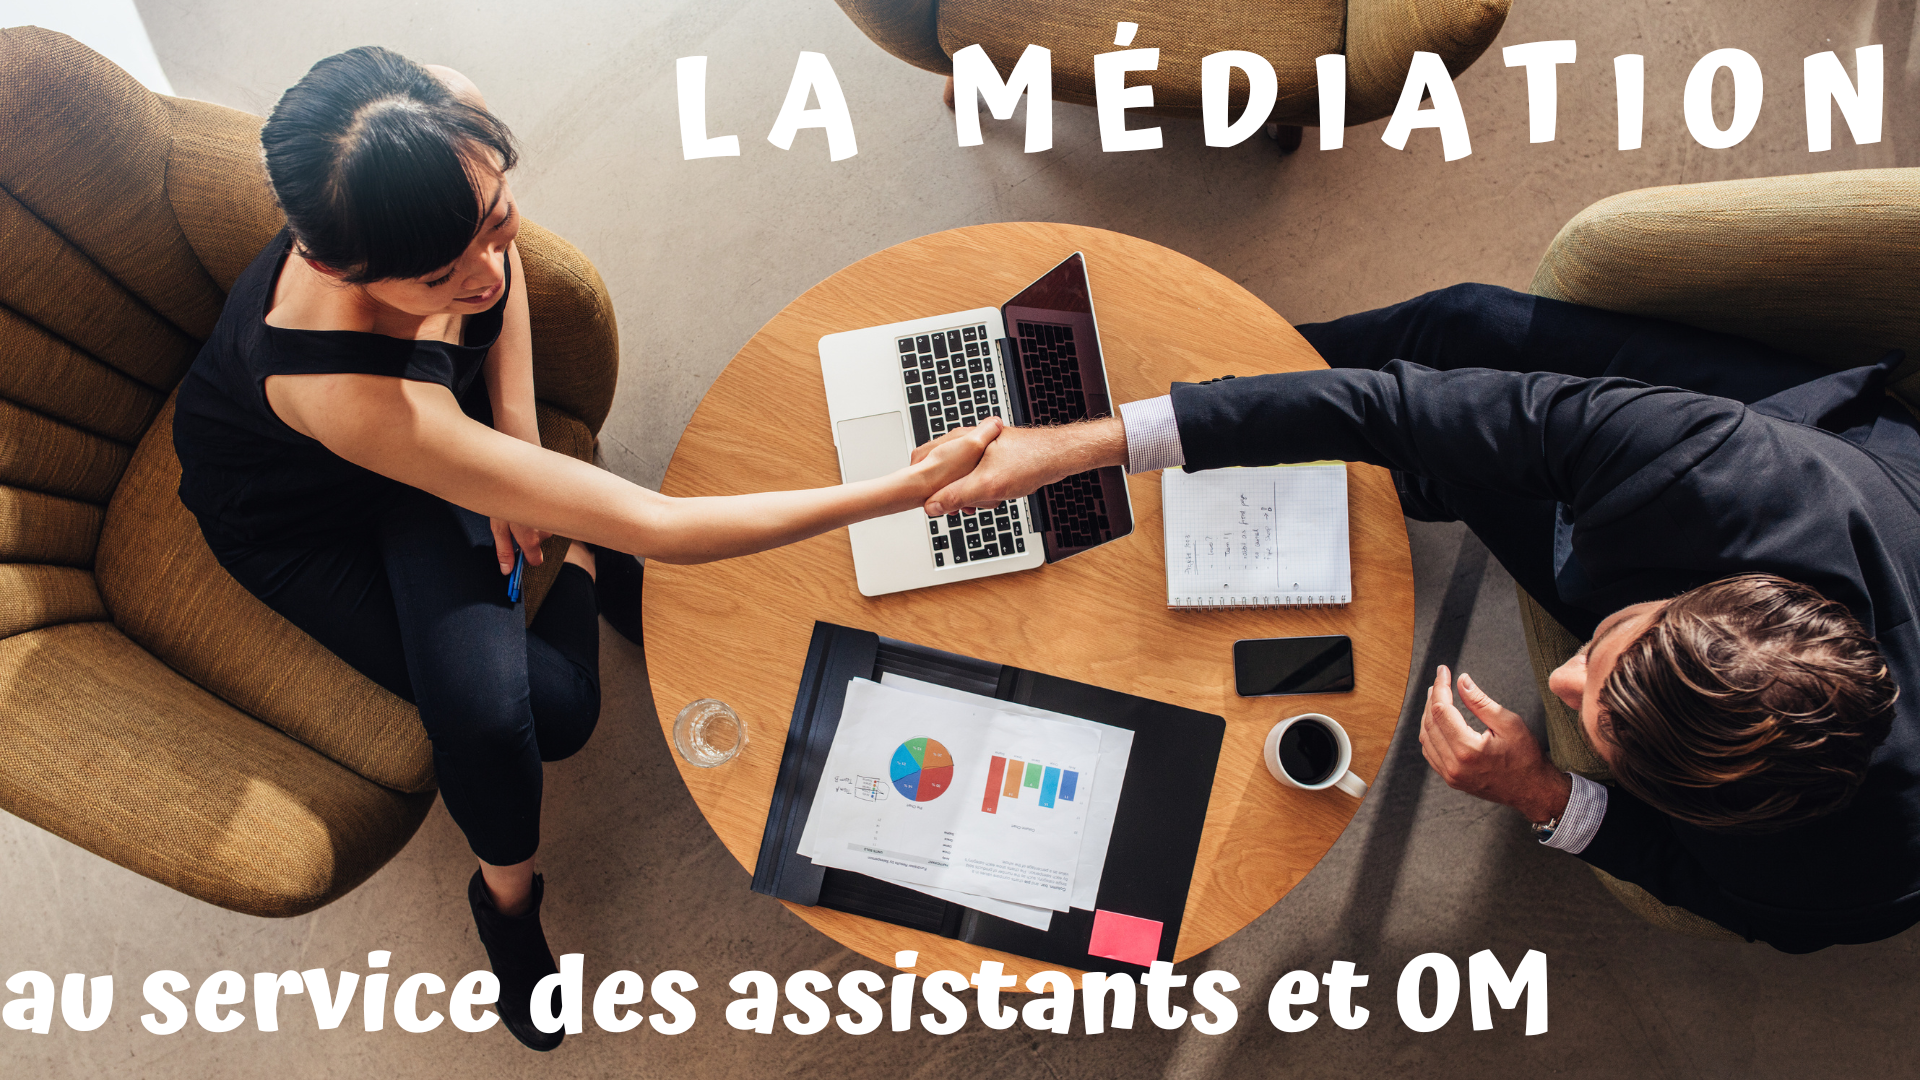 You are currently viewing La médiation au service des assistants